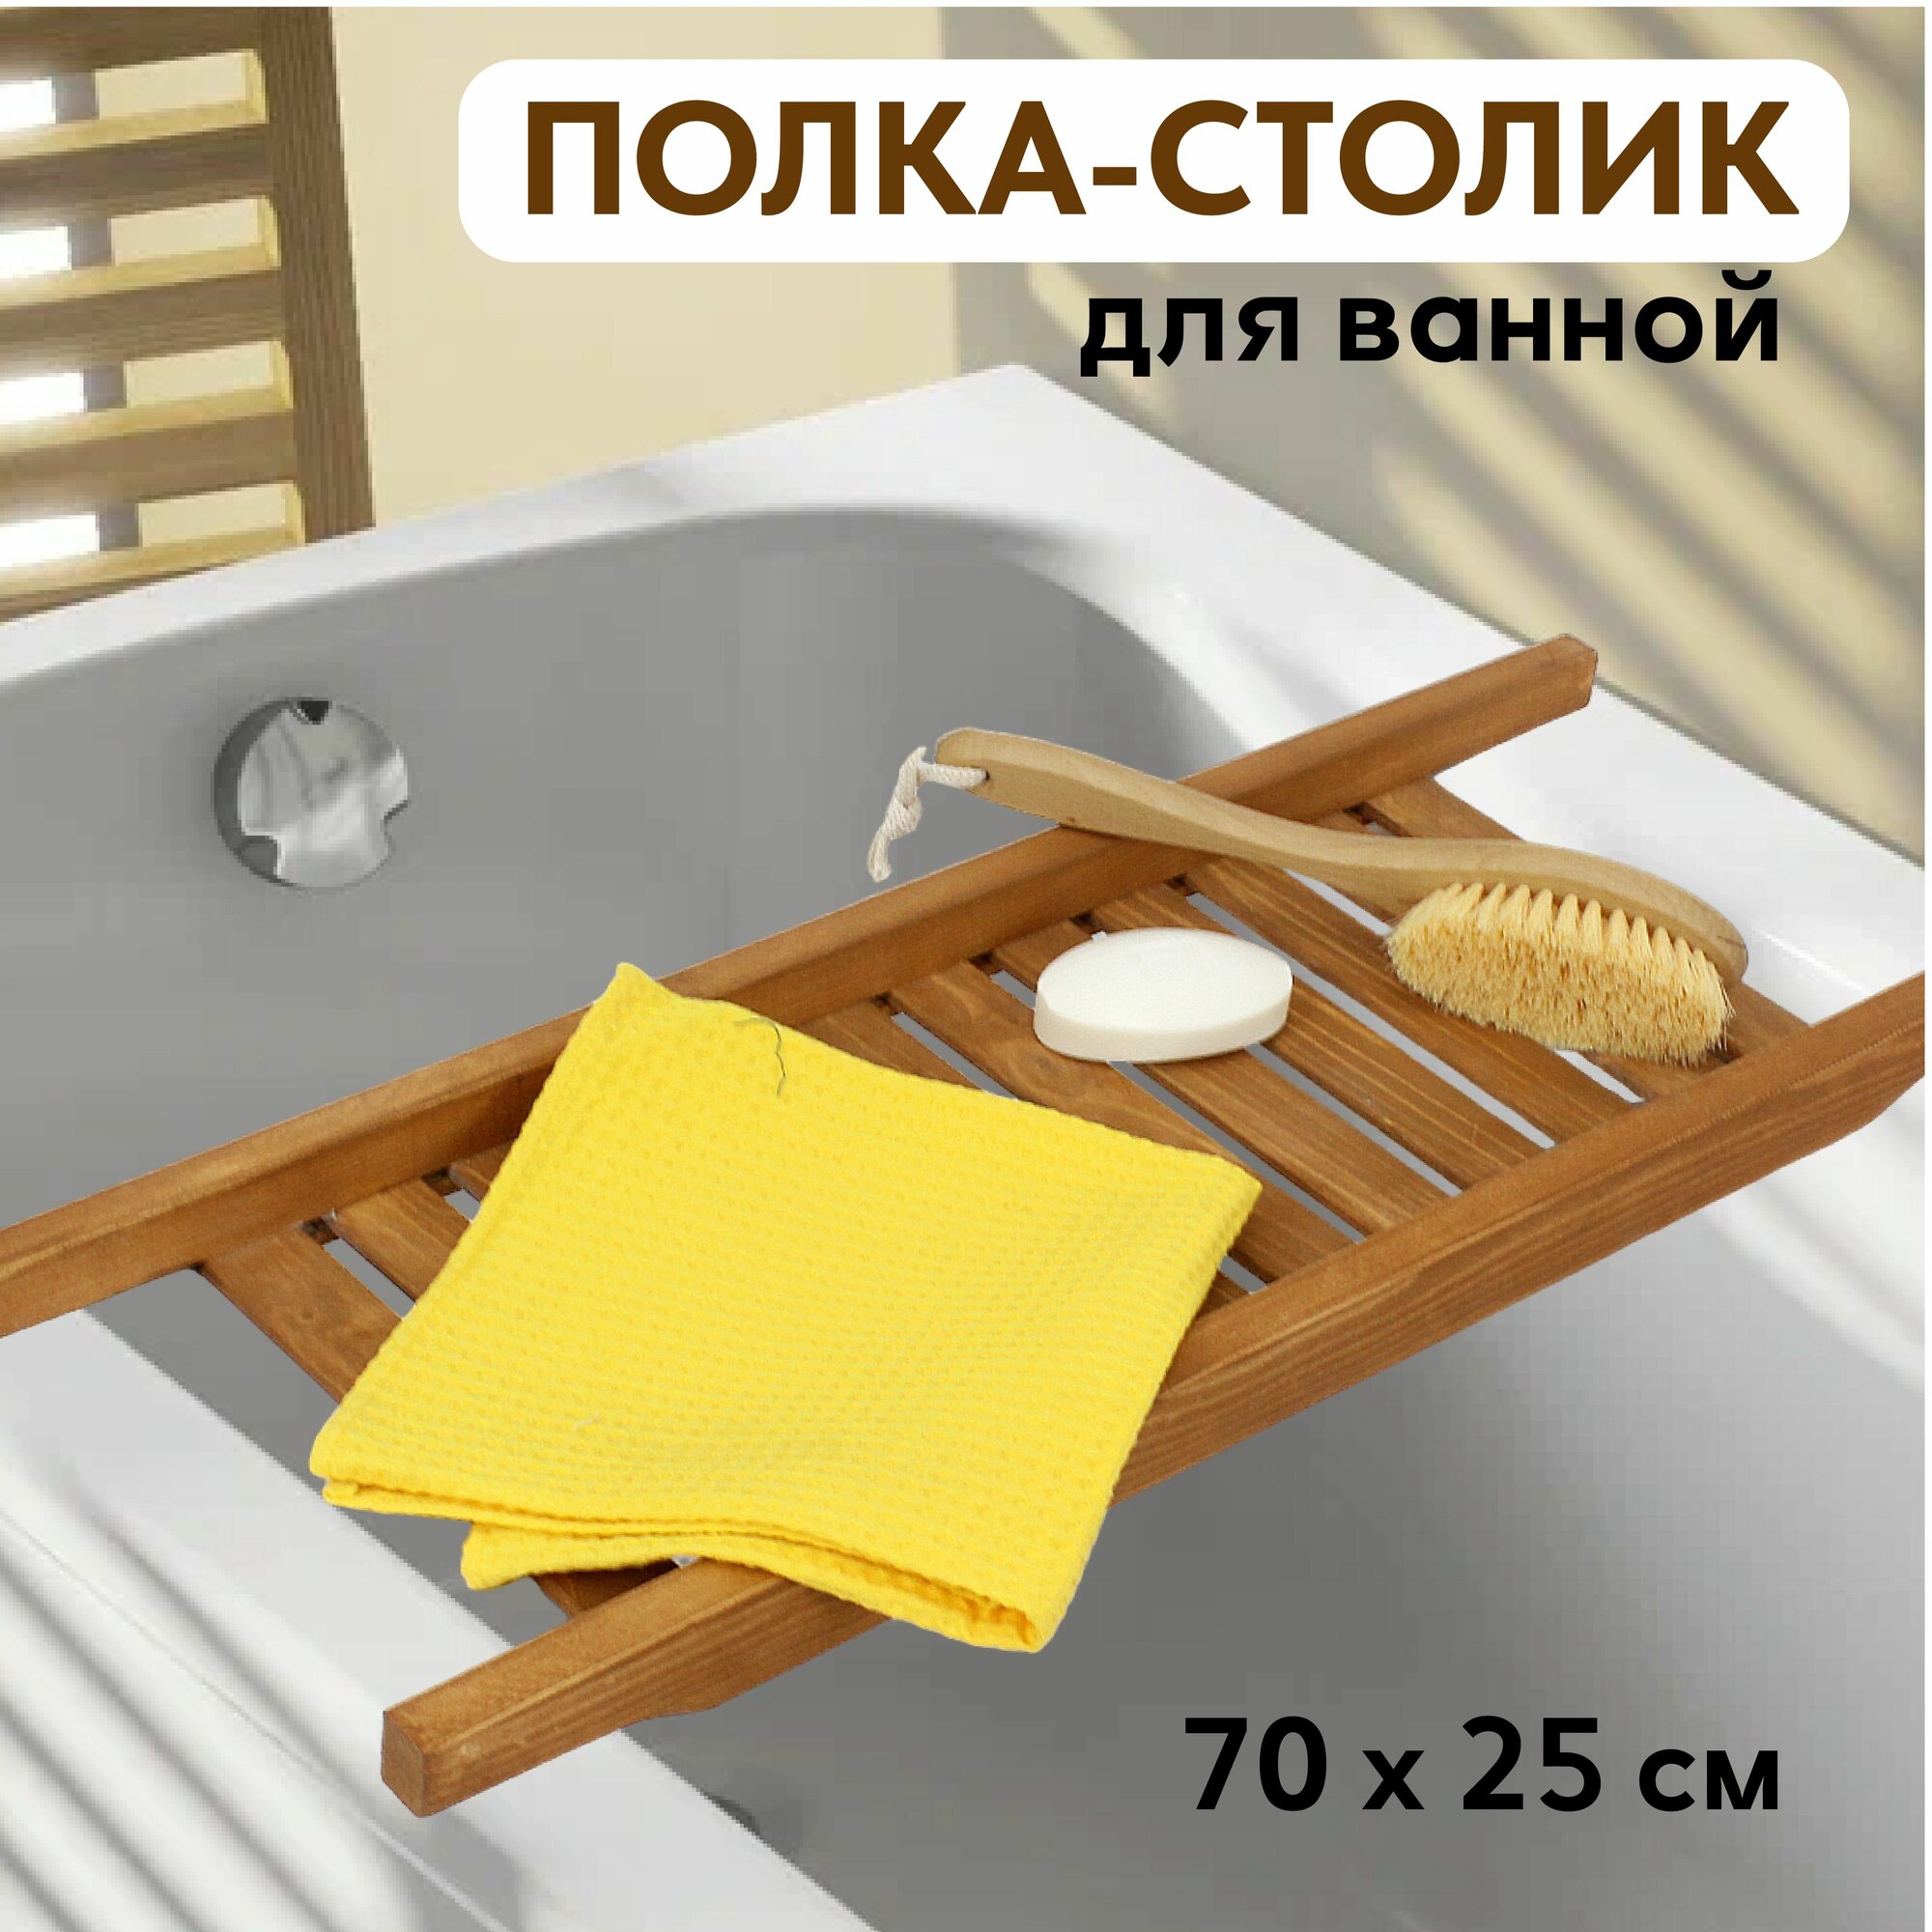 Полка-столик деревяннвя для ванны Размер 700*250 мм.